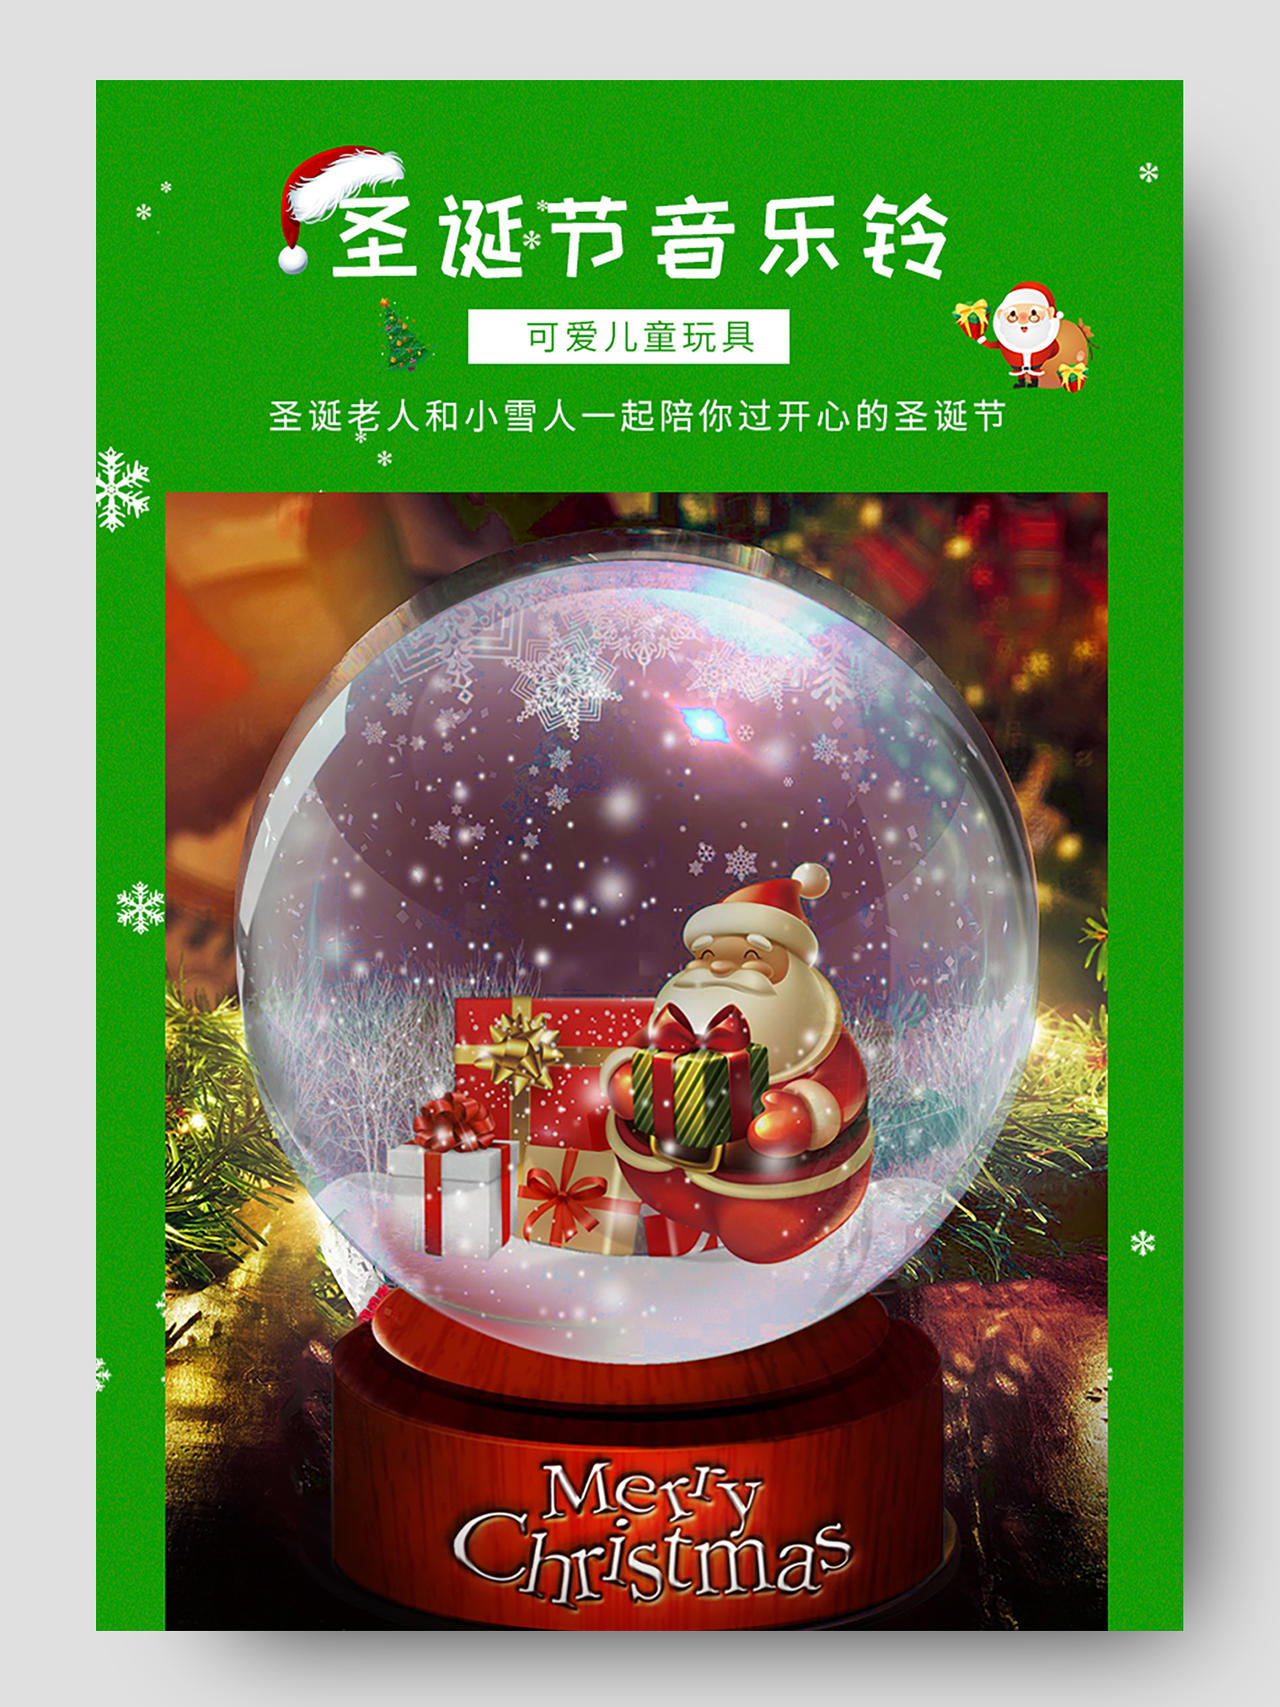 绿色卡通圣诞节音乐铃水晶球圣诞海报详情页圣诞详情页